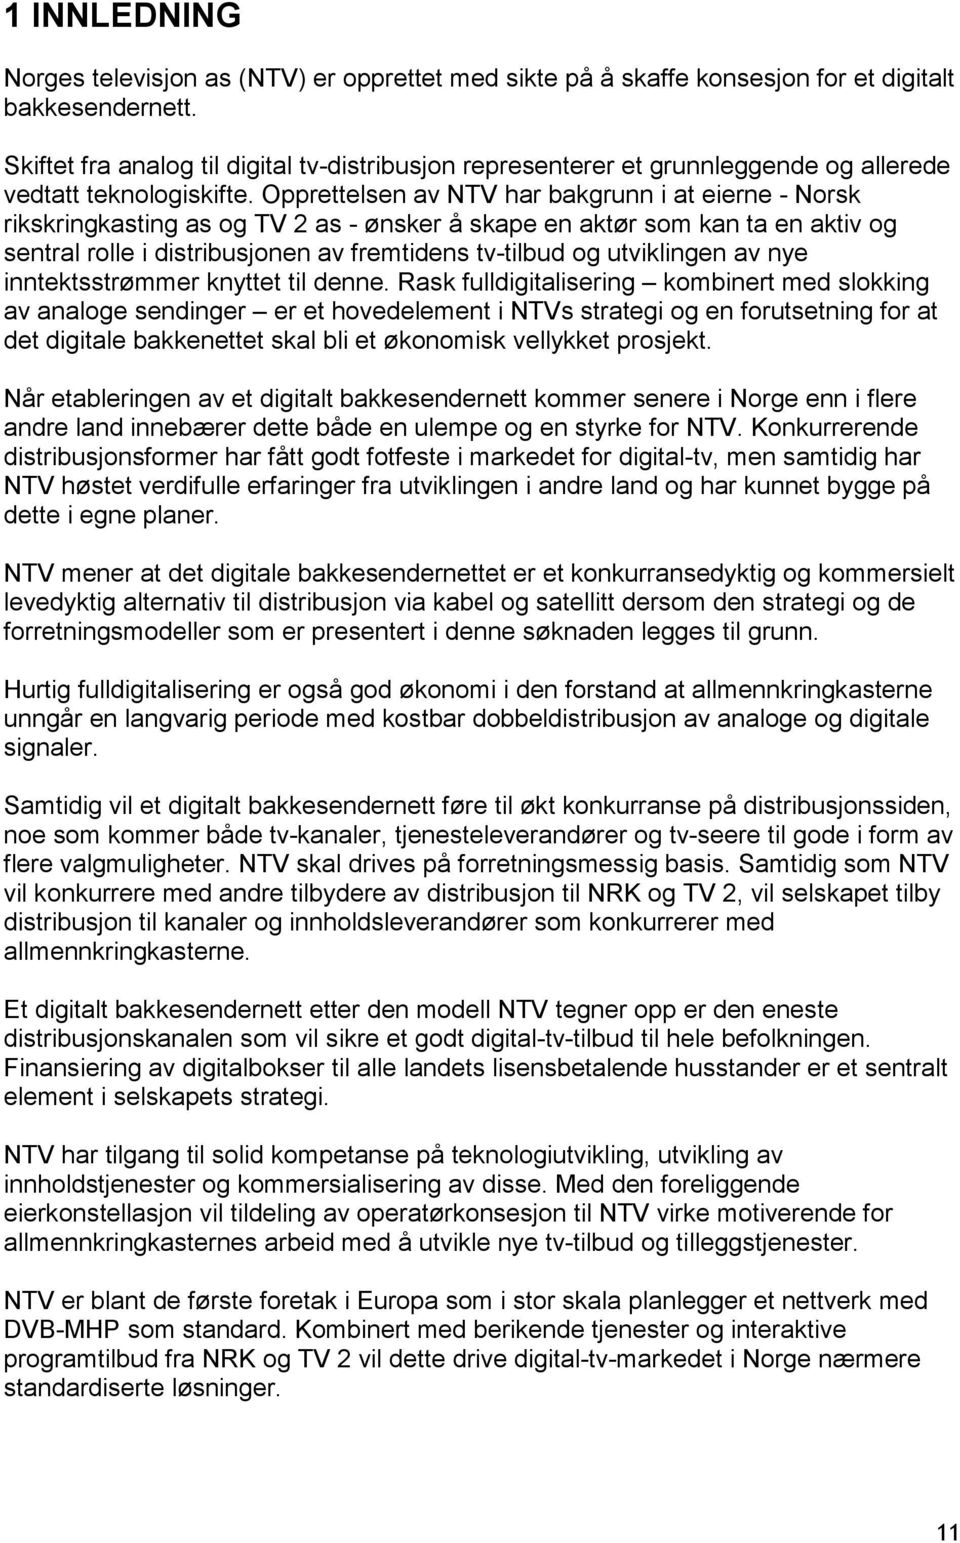 Opprettelsen av NTV har bakgrunn i at eierne - Norsk rikskringkasting as og TV 2 as - ønsker å skape en aktør som kan ta en aktiv og sentral rolle i distribusjonen av fremtidens tv-tilbud og